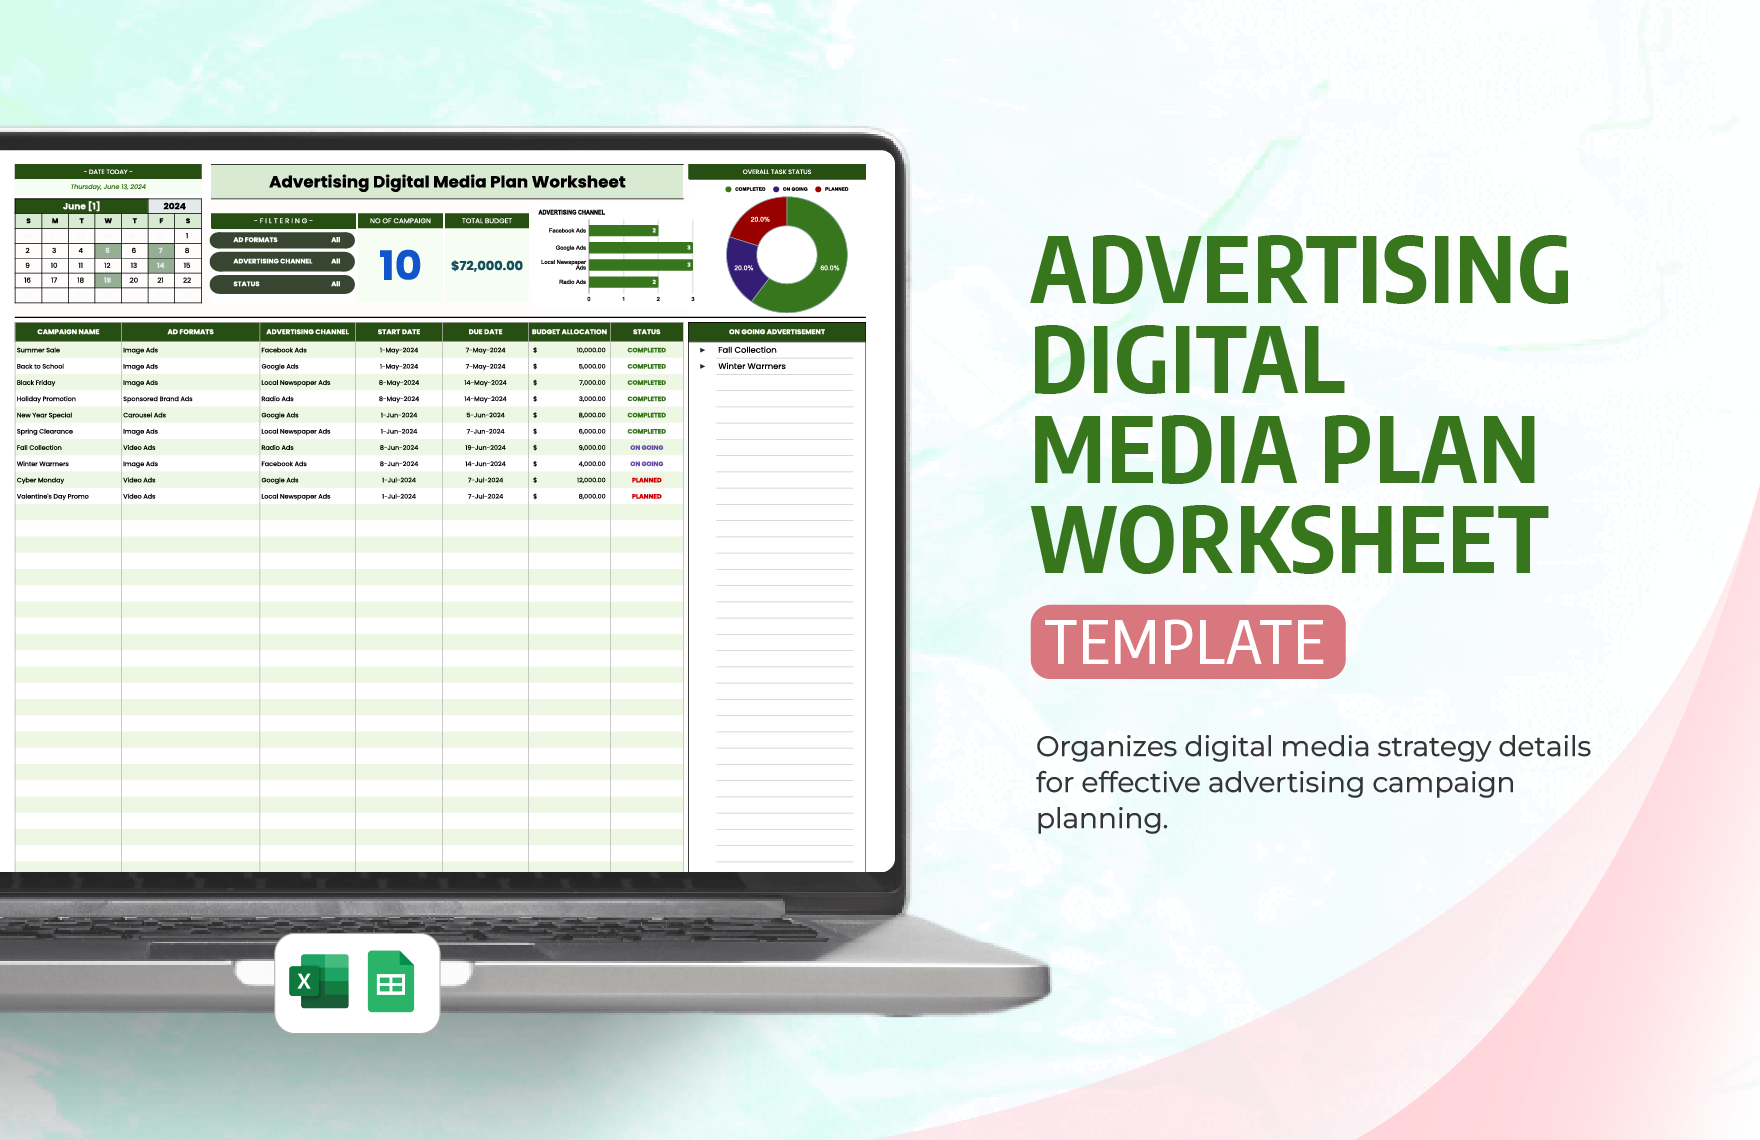 Advertising Digital Media Plan Worksheet Template in Excel, Google Sheets